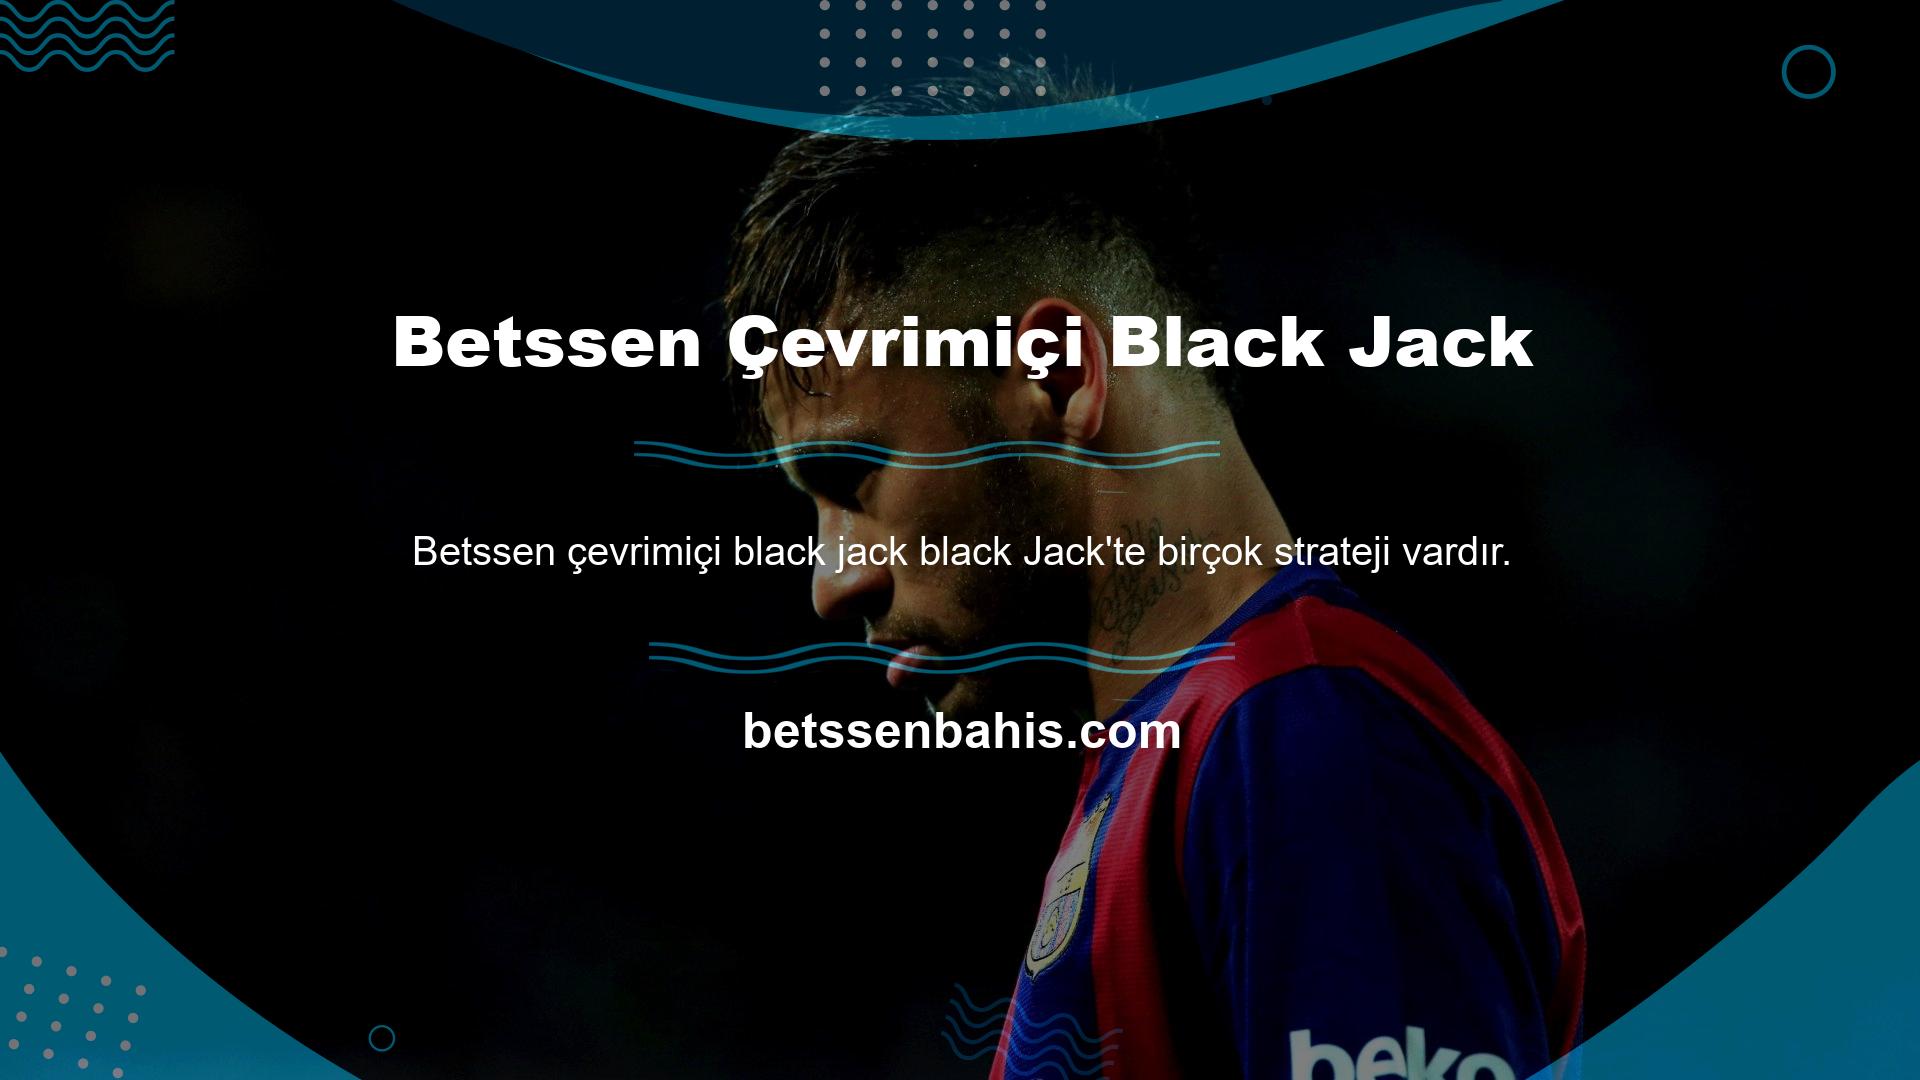 Black Jack Betssen çevrimiçi Black Jack taktik oyun stratejisini biliyorsanız, kolayca büyük kazanabilirsiniz